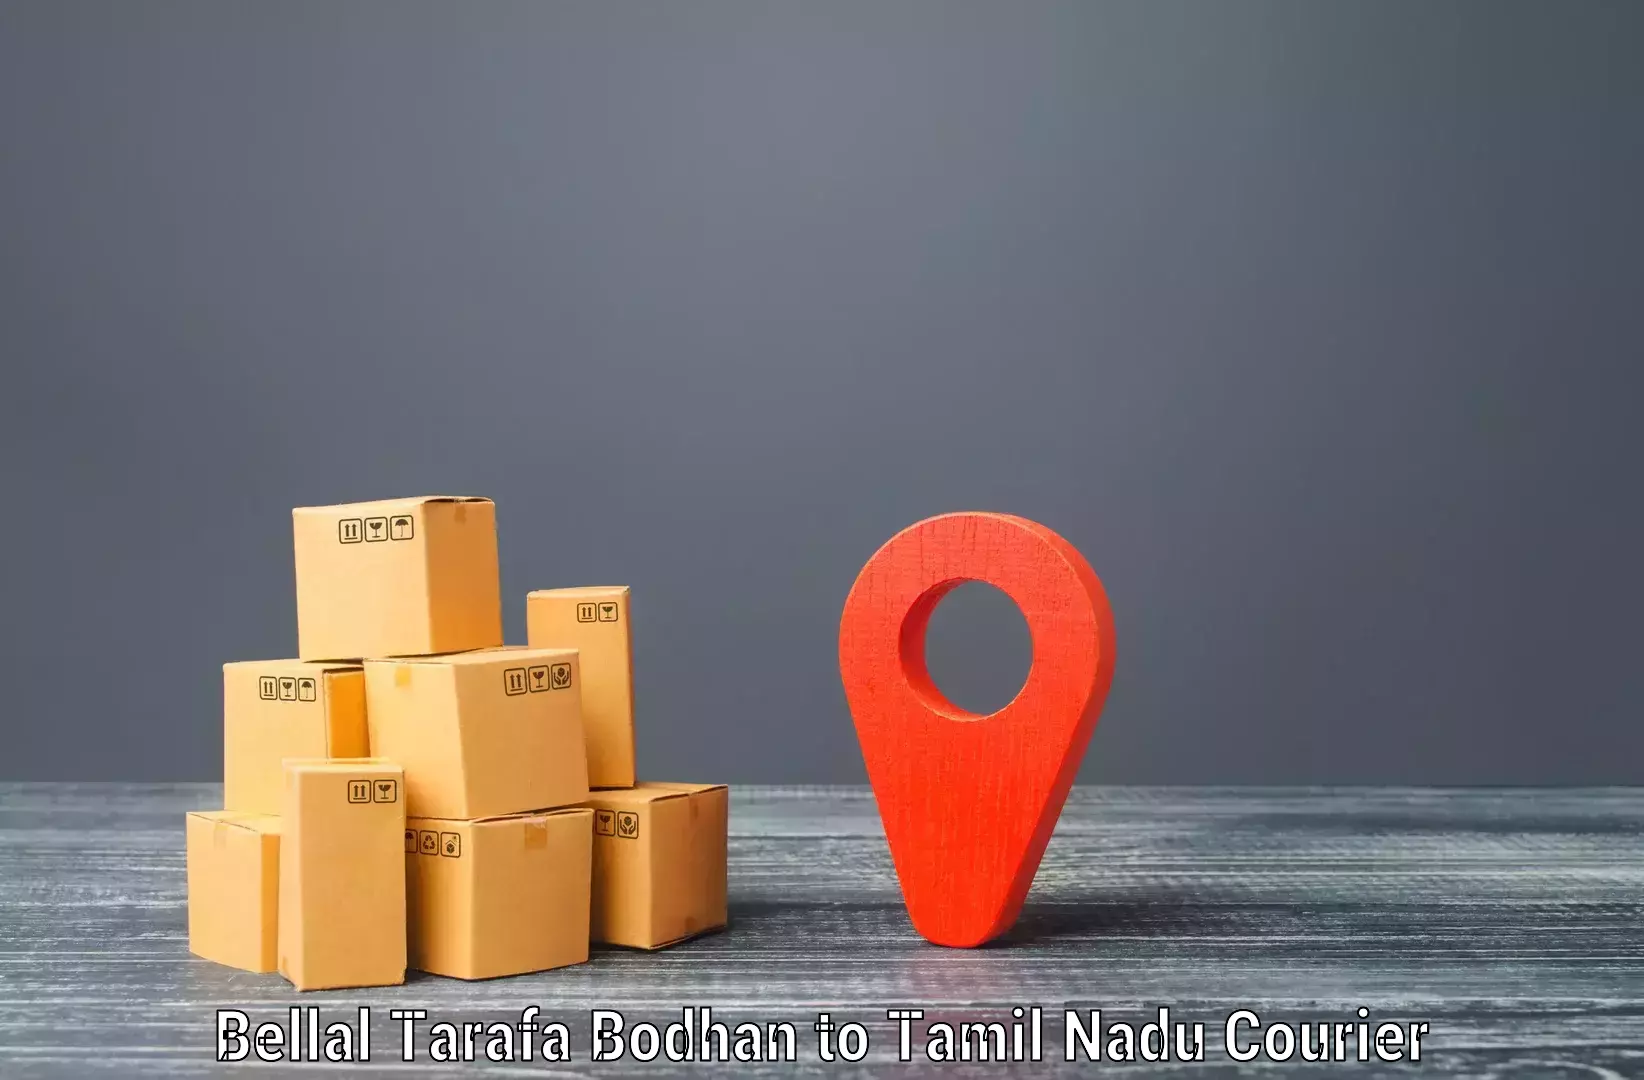 Seamless shipping service Bellal Tarafa Bodhan to Kodumudi